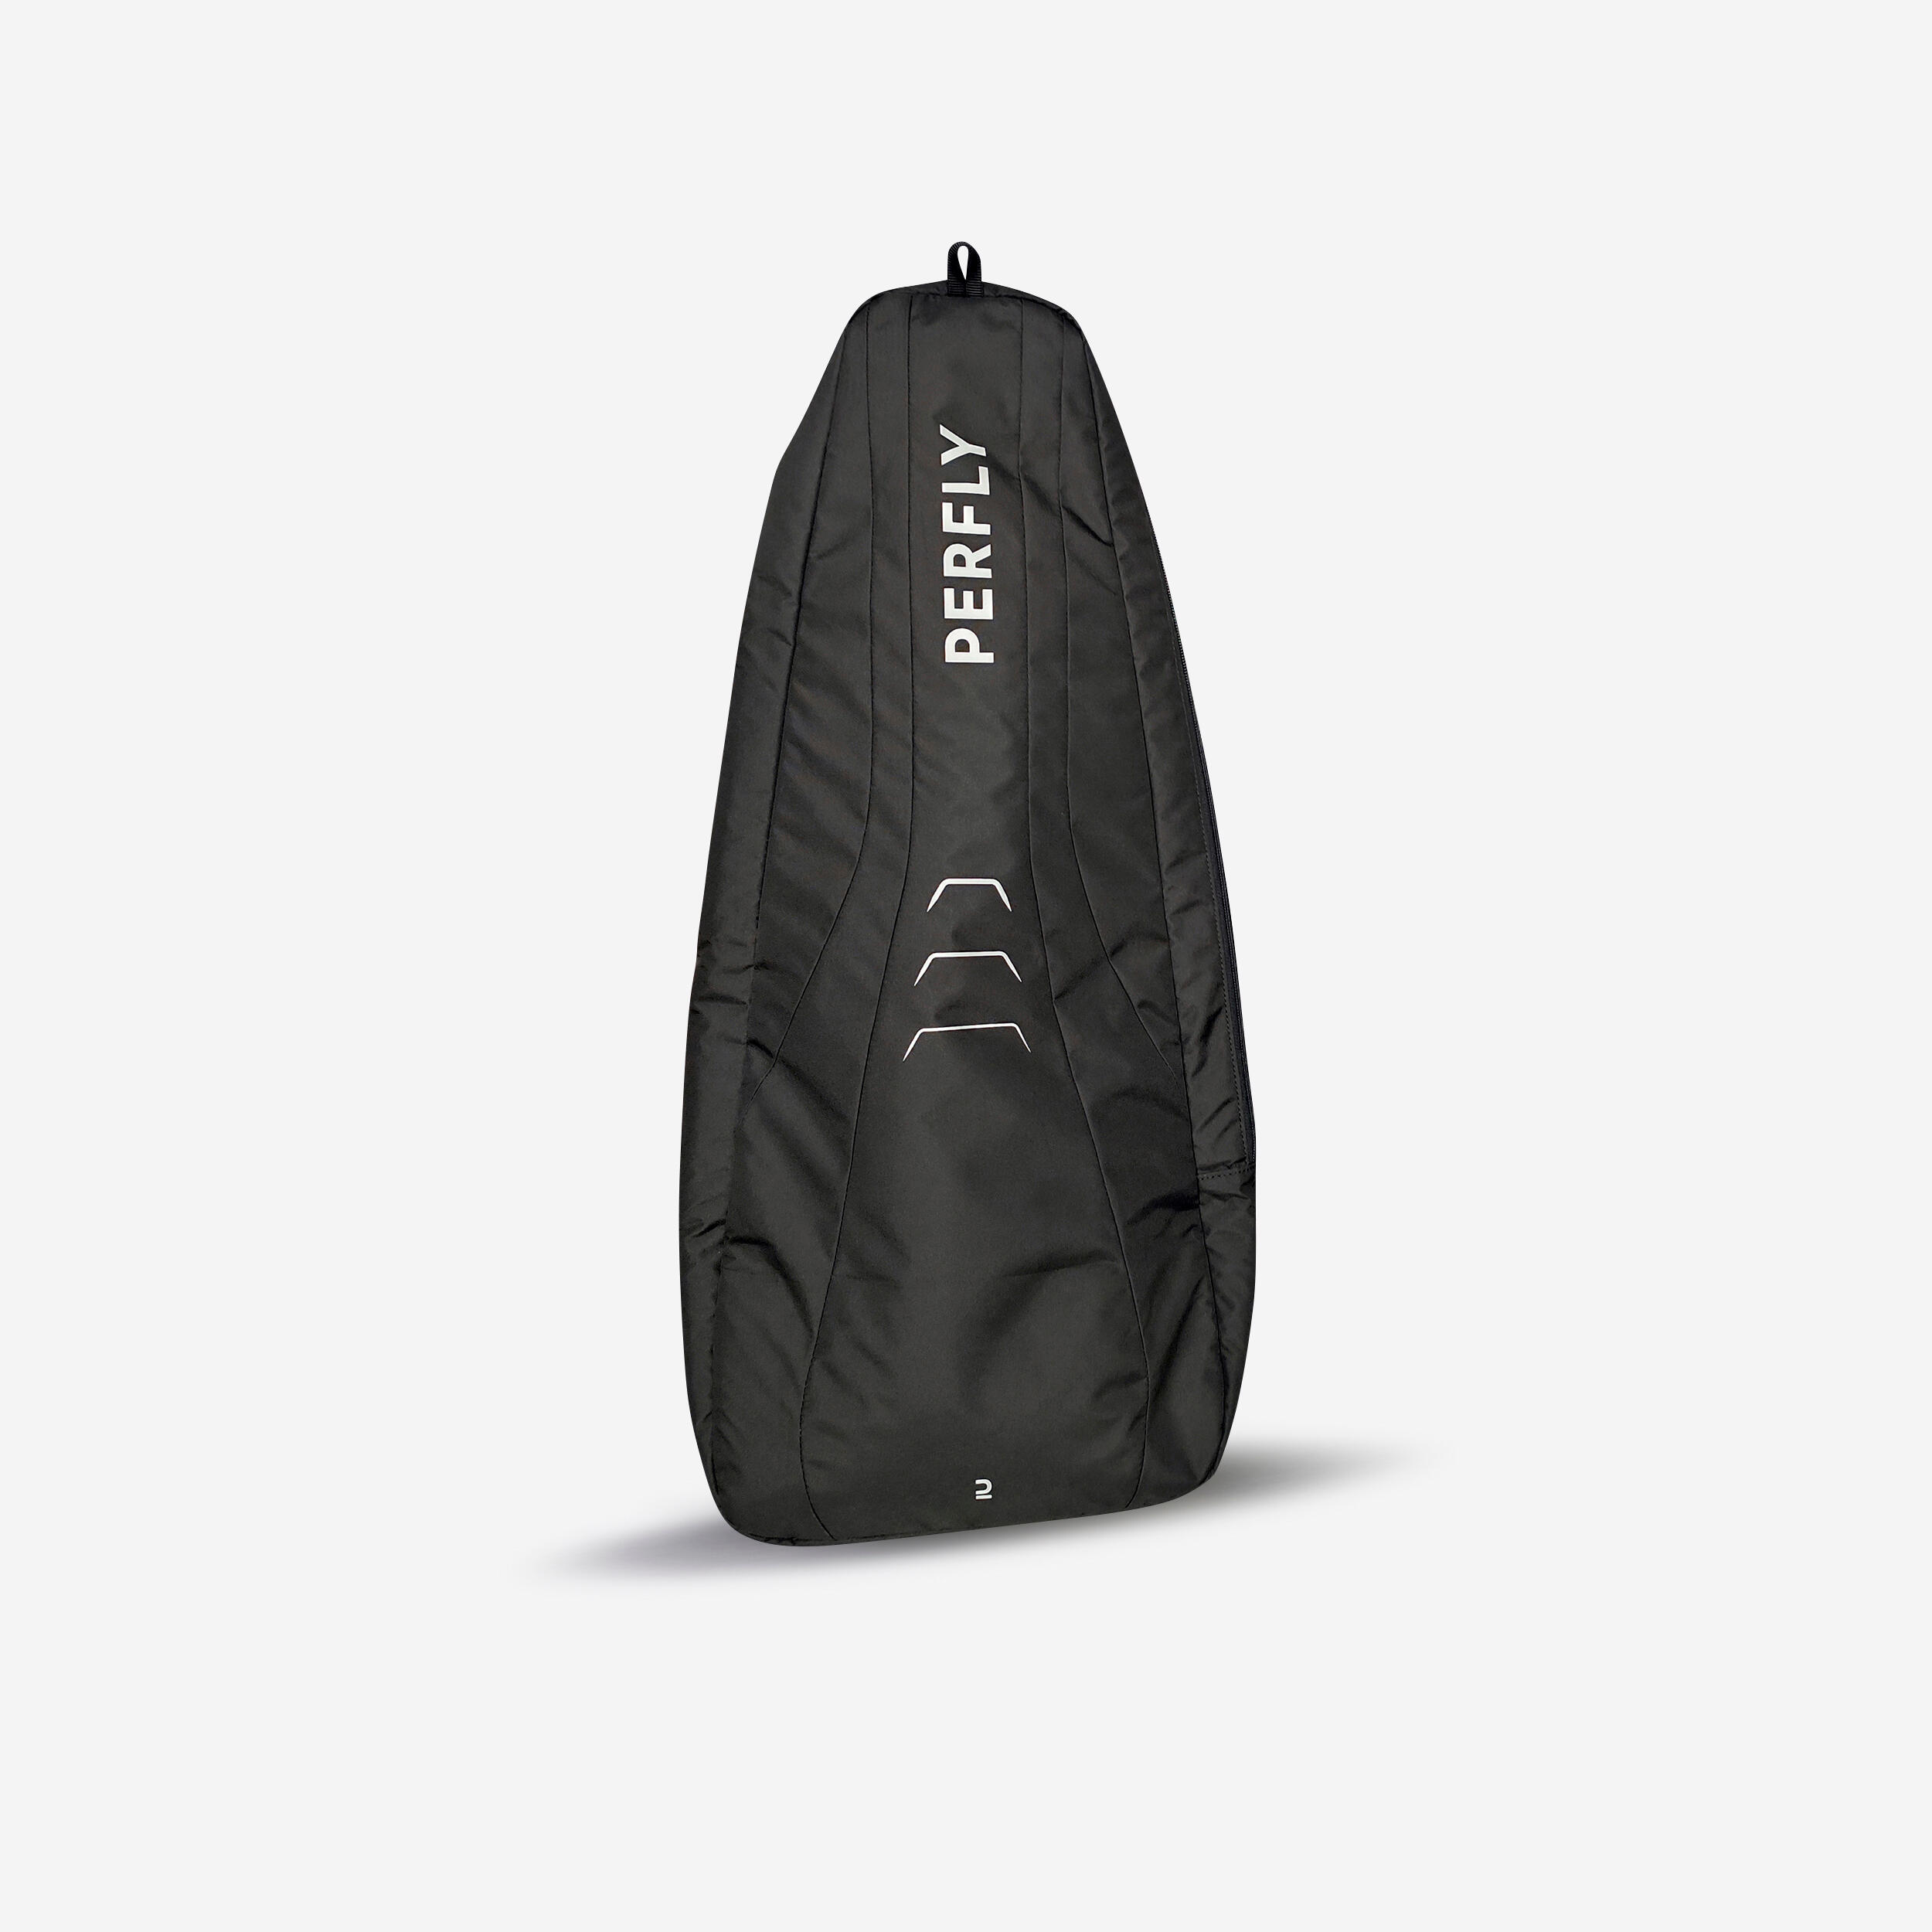 15L Squash Backpack SL 100 1/1